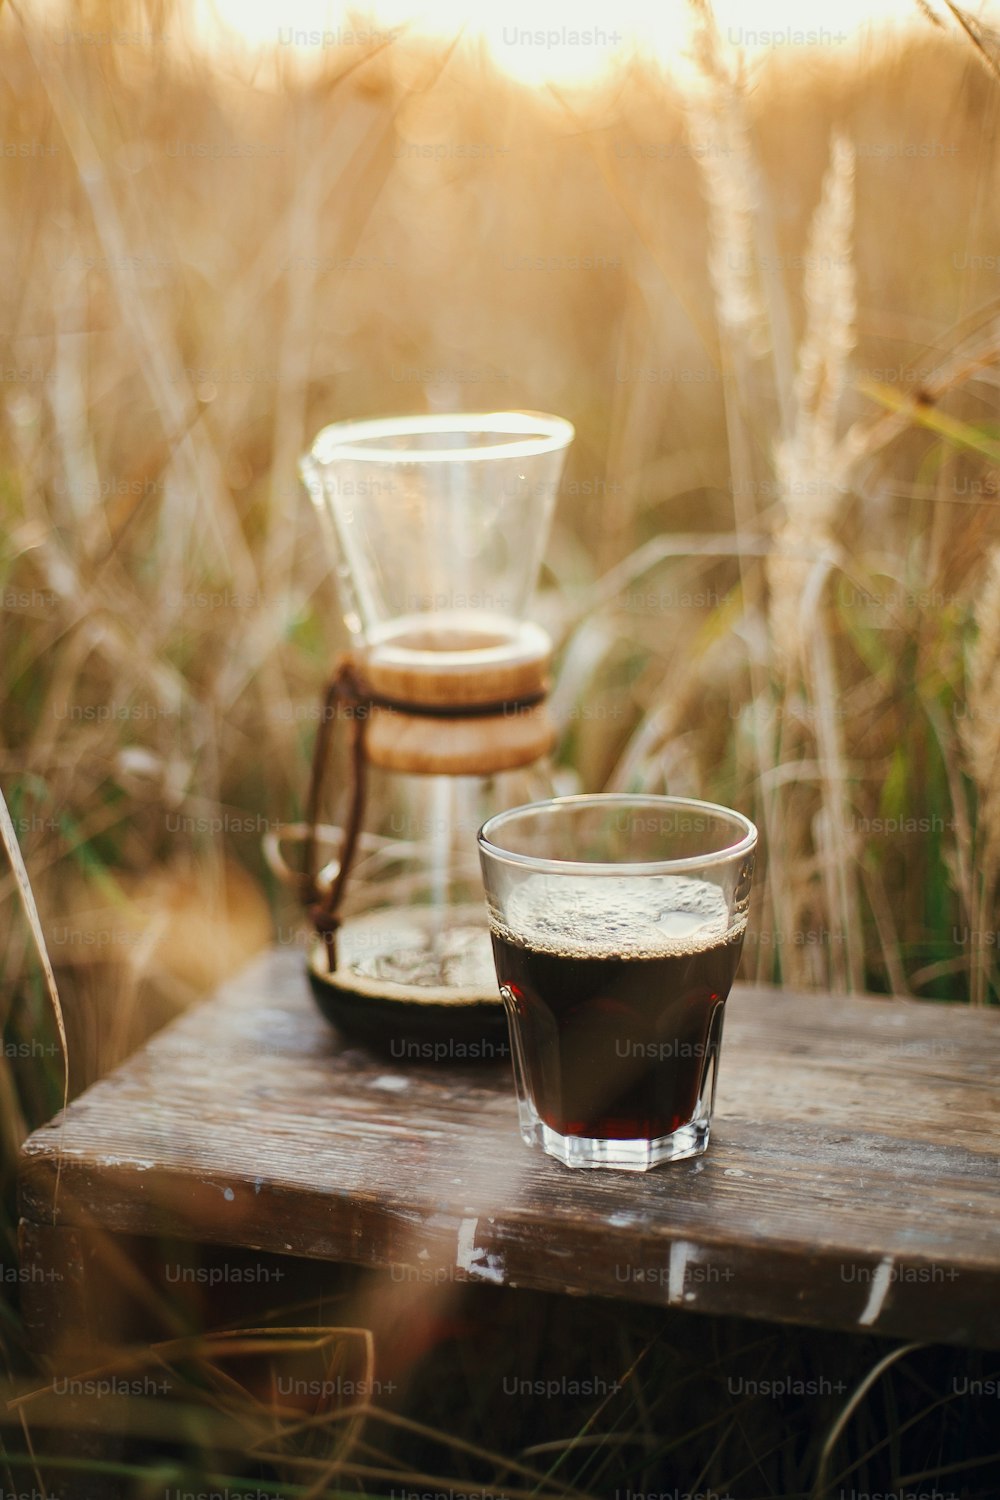 여행 중 야외에서 대체 커피 추출. 유리 컵에 담긴 뜨거운 커피와 시골 허브의 햇볕이 잘 드는 따뜻한 빛을 배경으로 유리 플라스크. 분위기 있는 소박한 고요한 순간. 세로 이미지